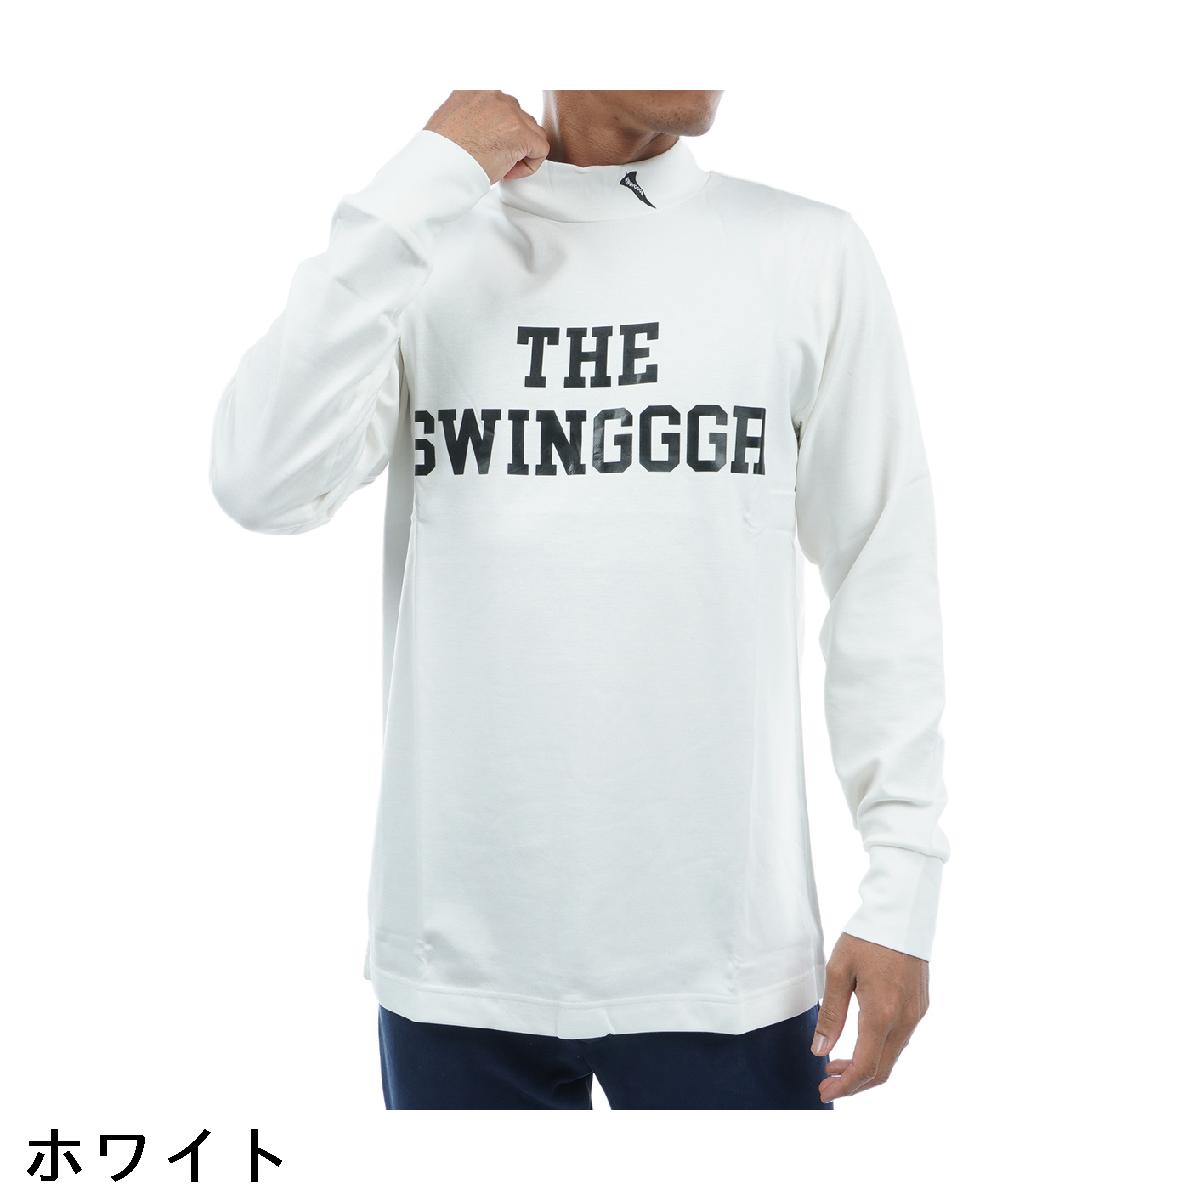 ザ スウィンガー THE SWINGGGR ストレッチ ポンチモックネック 長袖シャツ